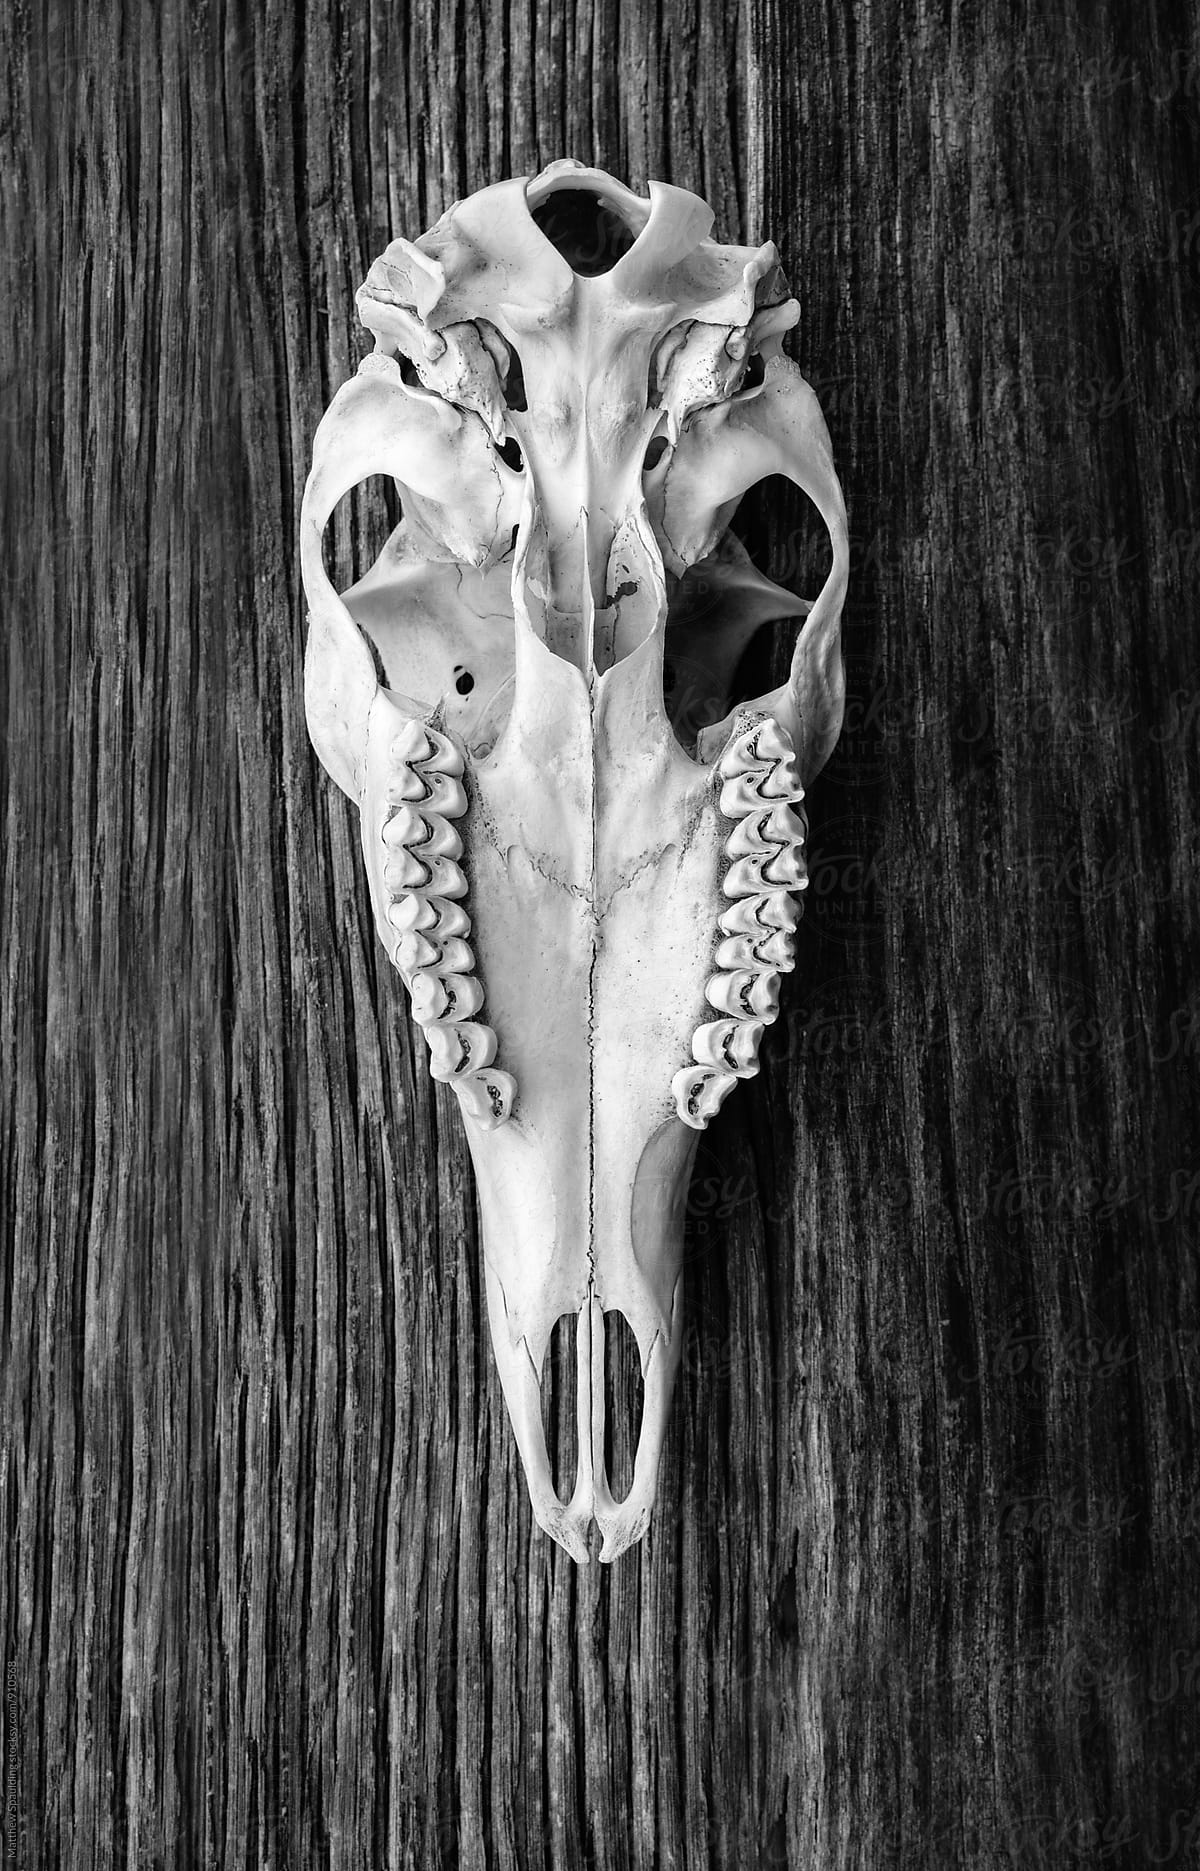 Bottom of deer skull bone specimen on wood showing teeth